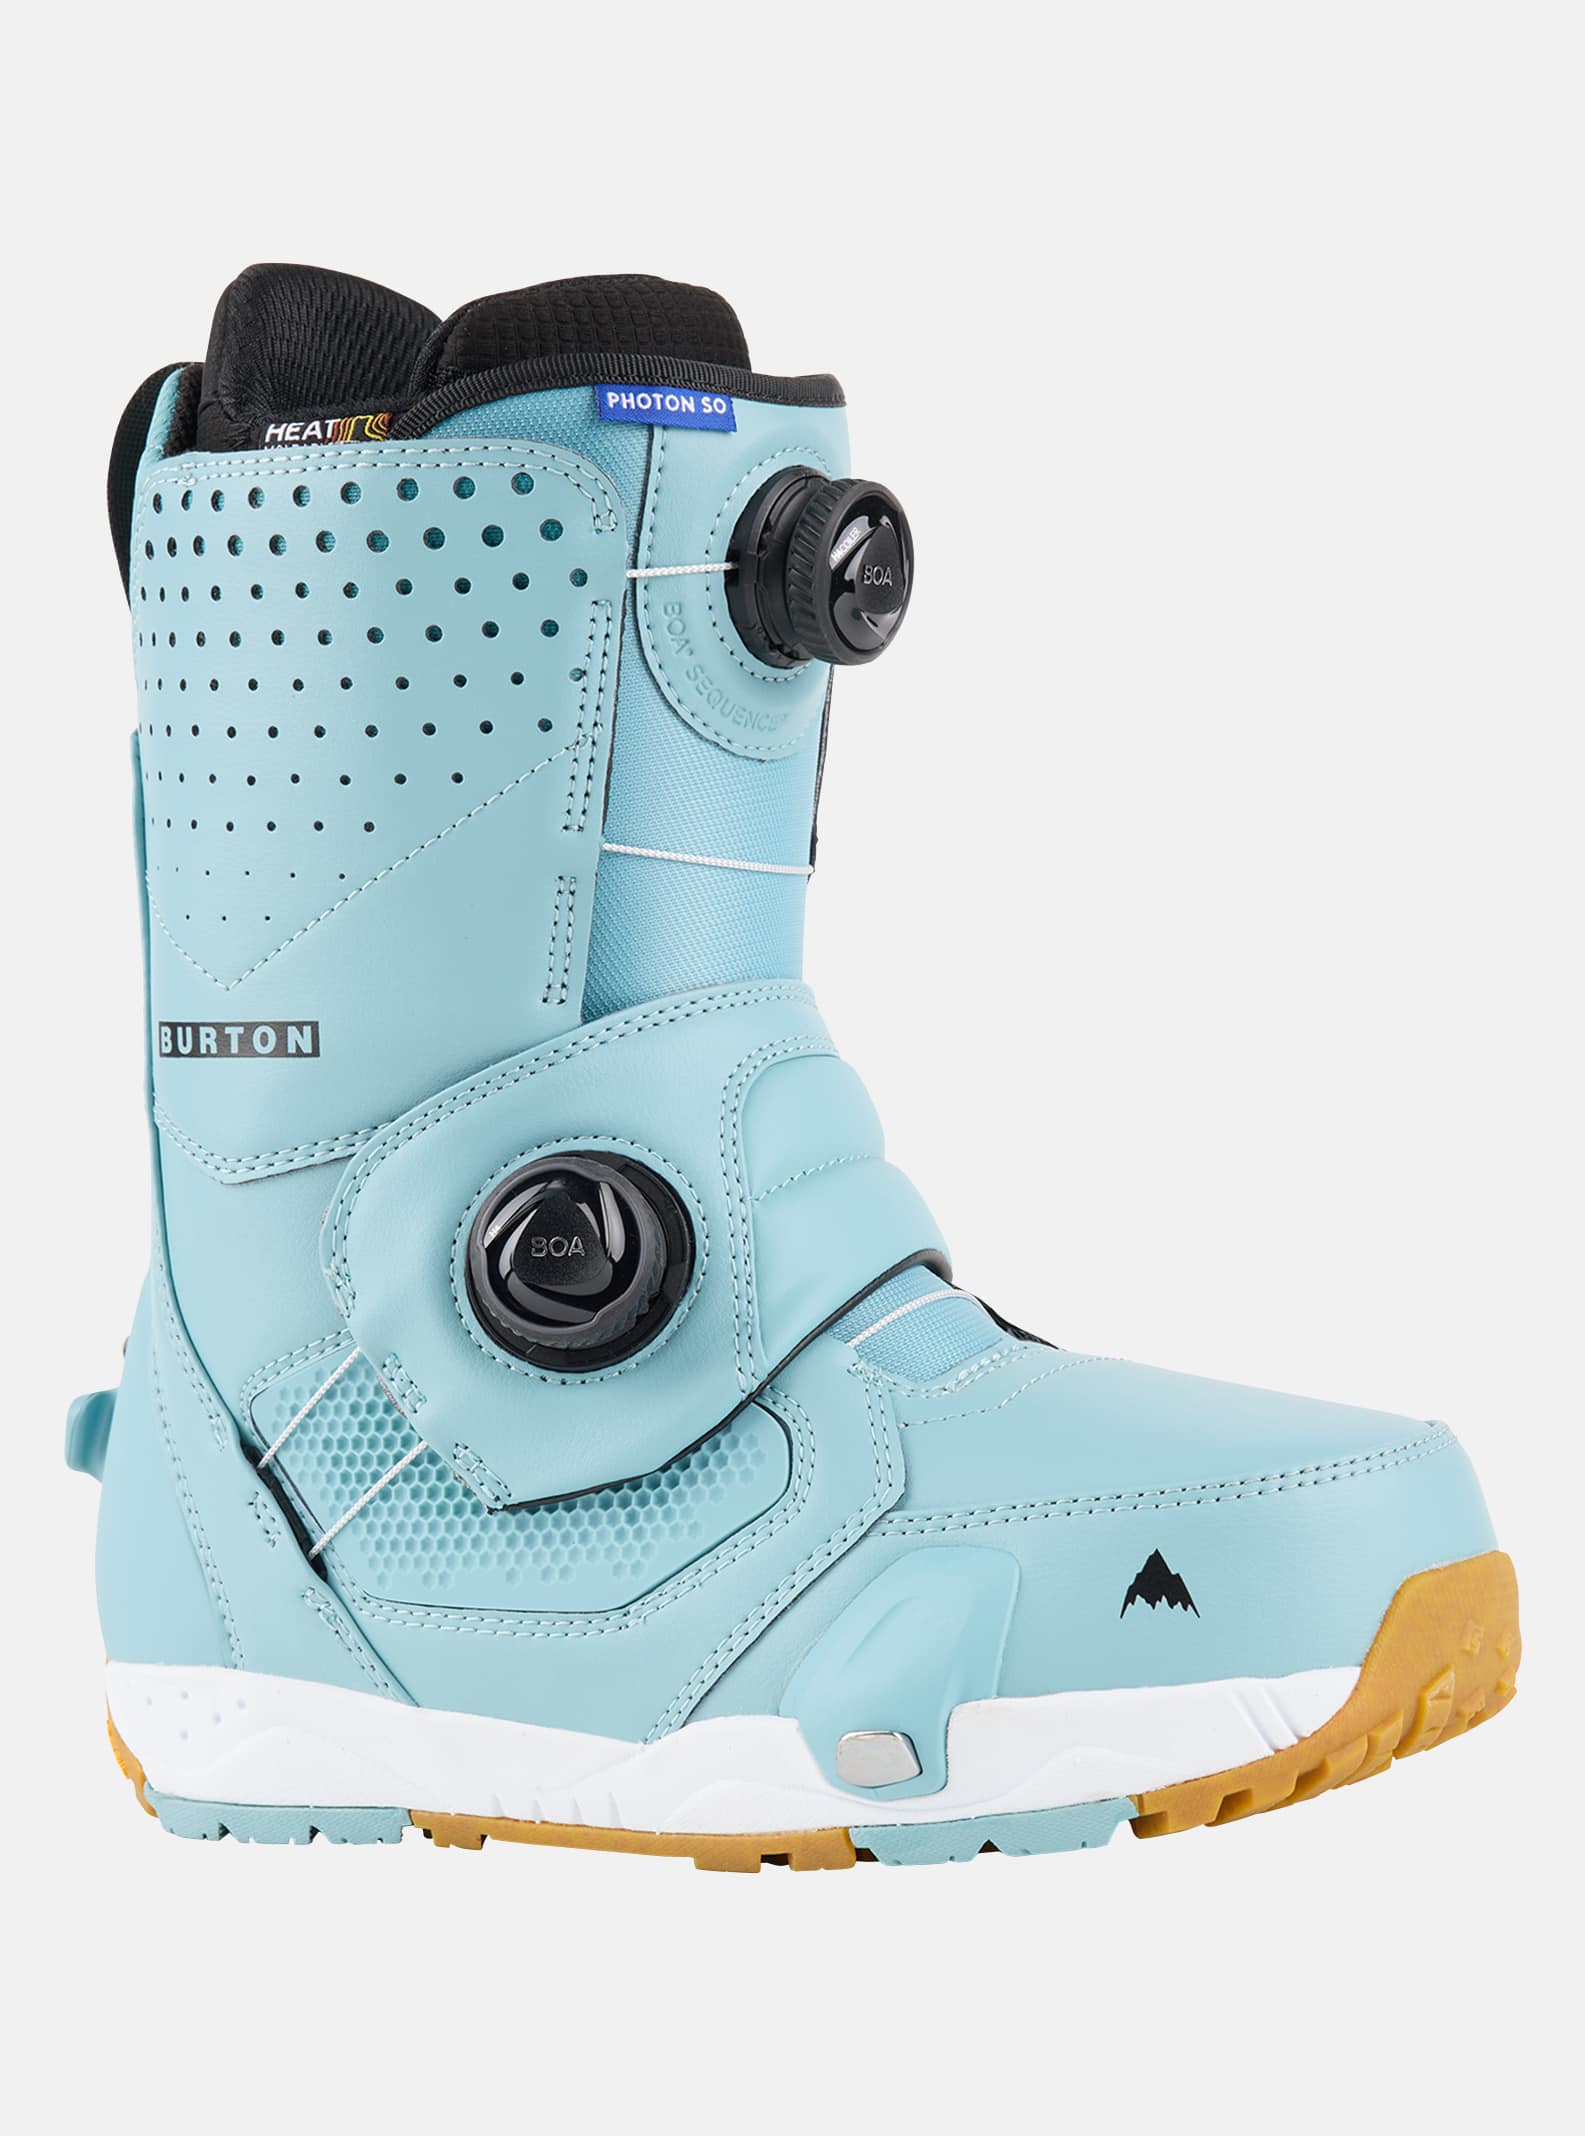 Burton - Boots de snowboard Photon Step On® homme, Rock Lichen, 10